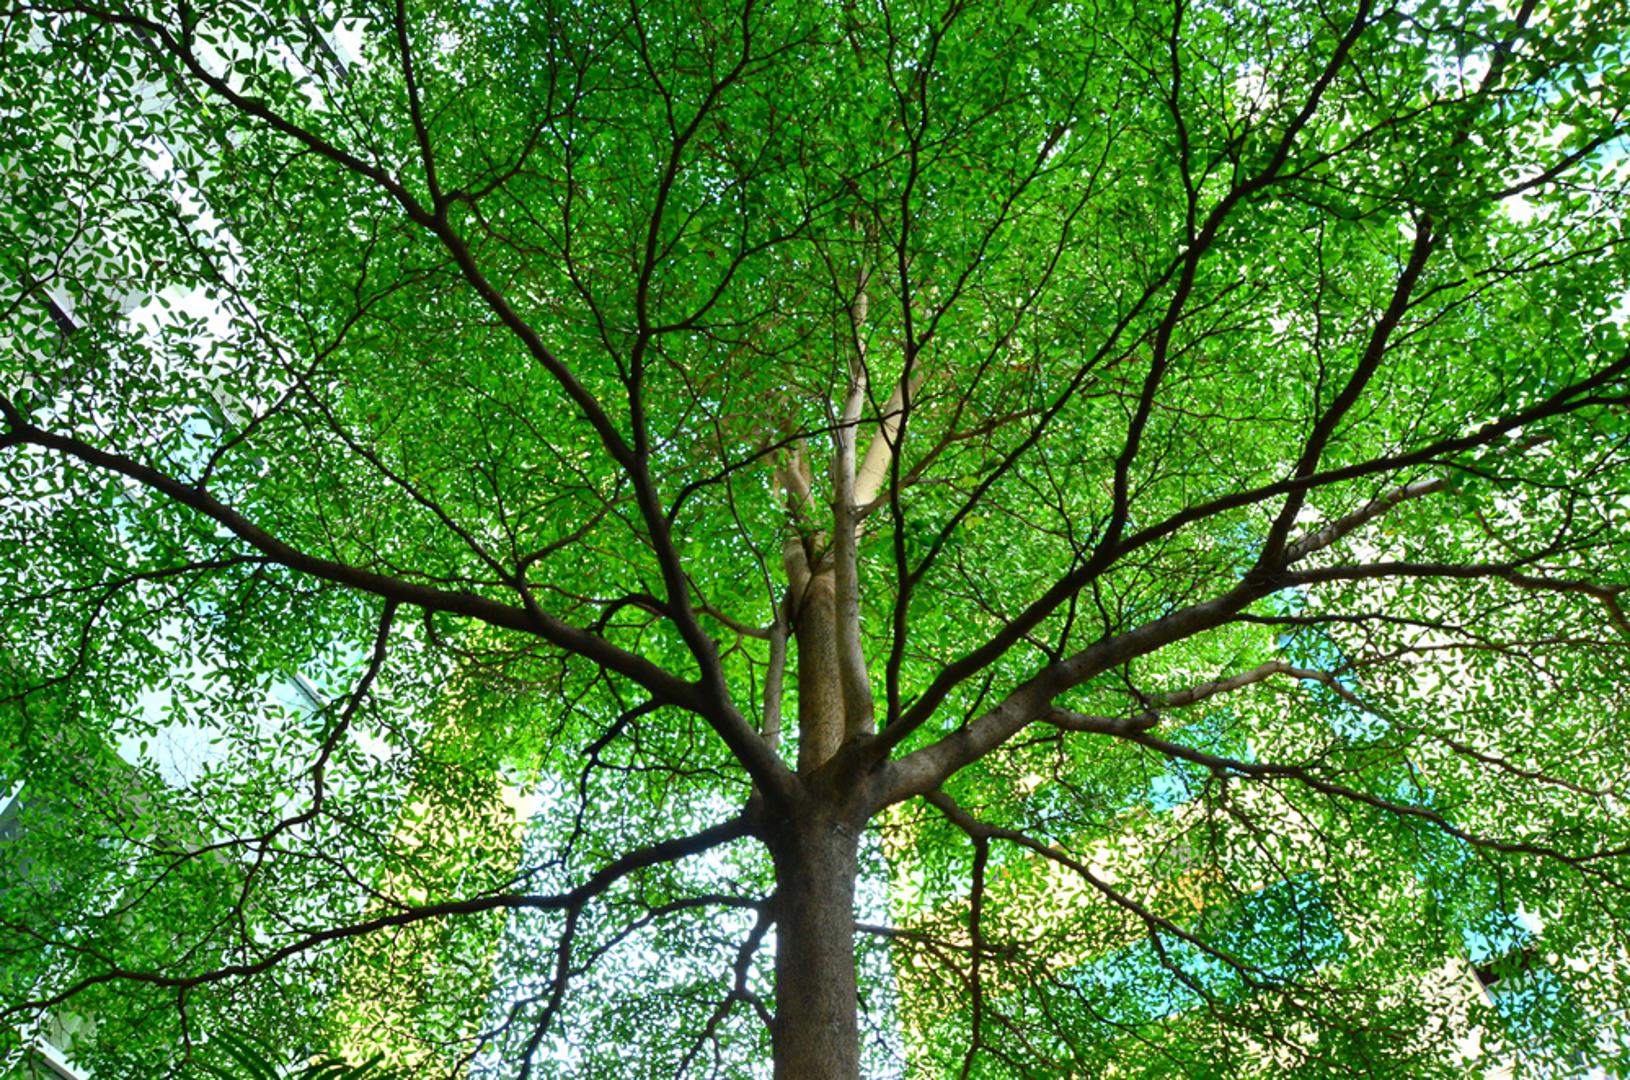 Stajanje ispod drveta: Grom često pogađa stabla, posebice ako su osamljena na većoj površini. Stoga nikad ne tražite zaklon od grmljavinske oluje ispod drveta! Prema nekim istraživanjima upravo je to drugi vodeći uzrok smrti tijekom grmljavinskih nevremena u svijetu.